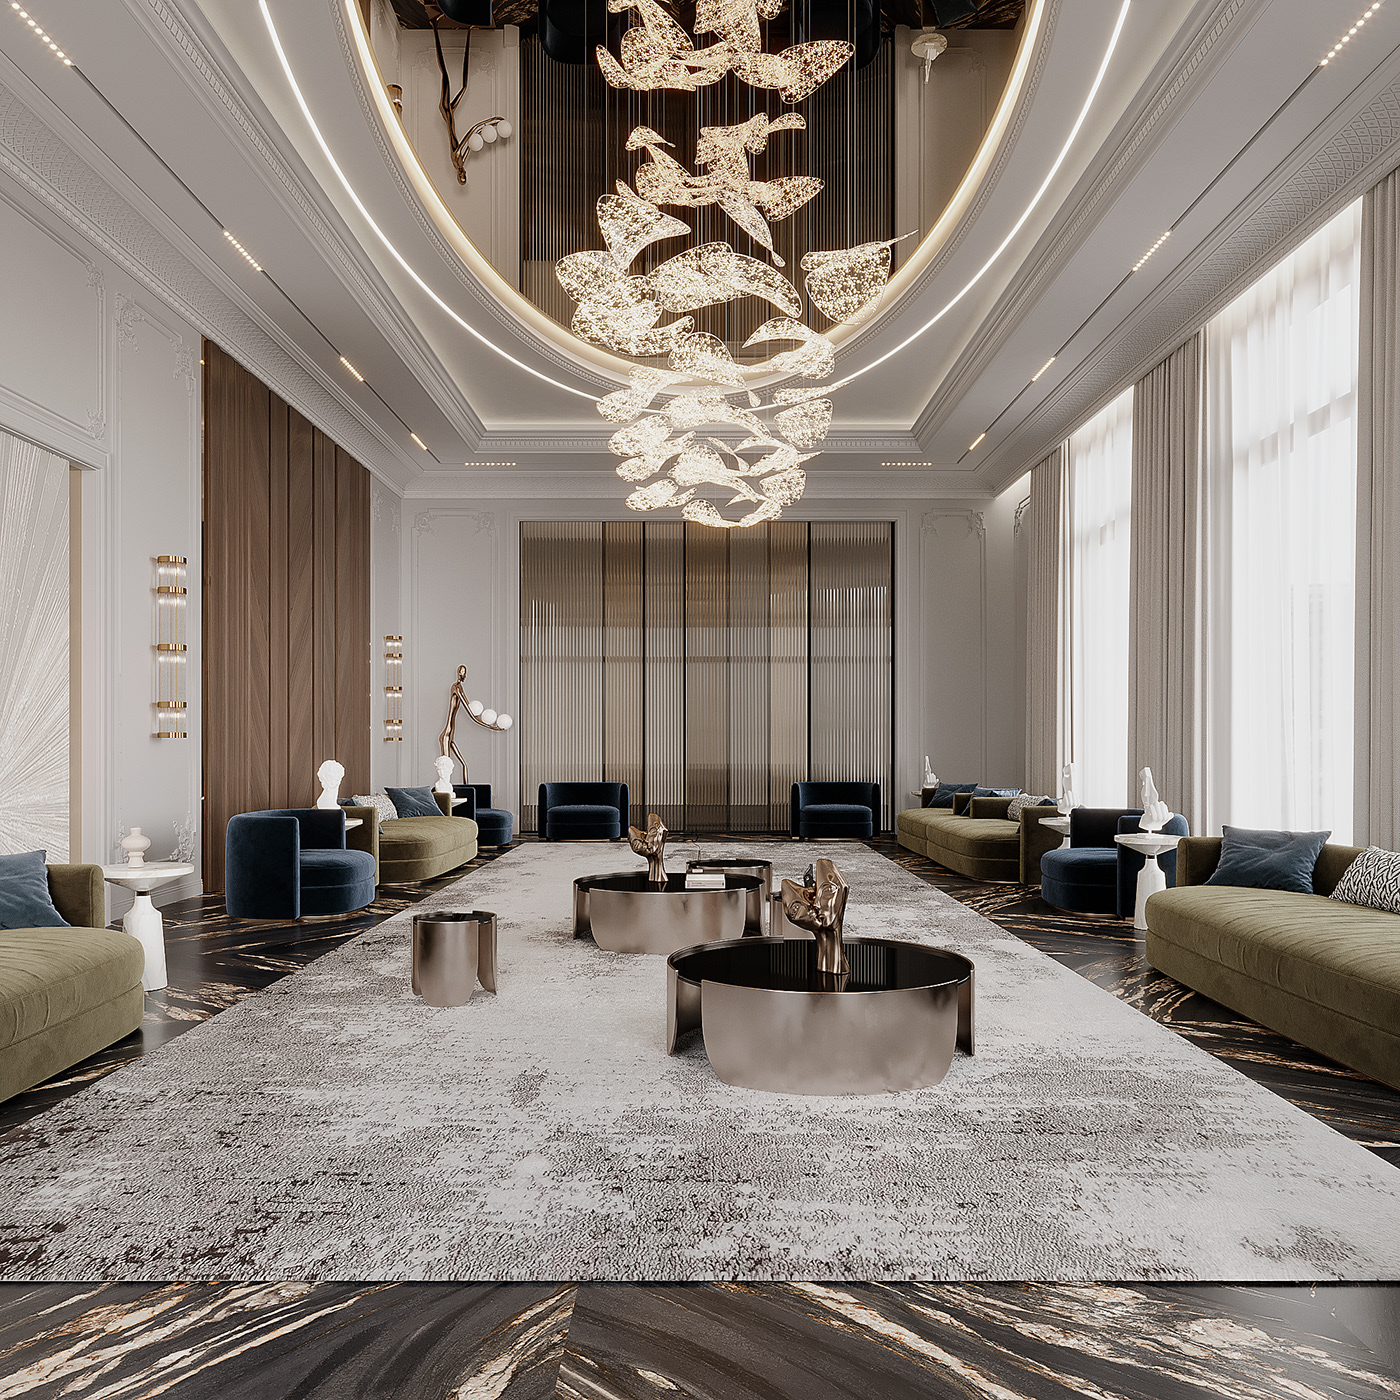 Luxury Design Interior architecture נחמי חשין تنمية بشرية  interior design  corona visualization home design